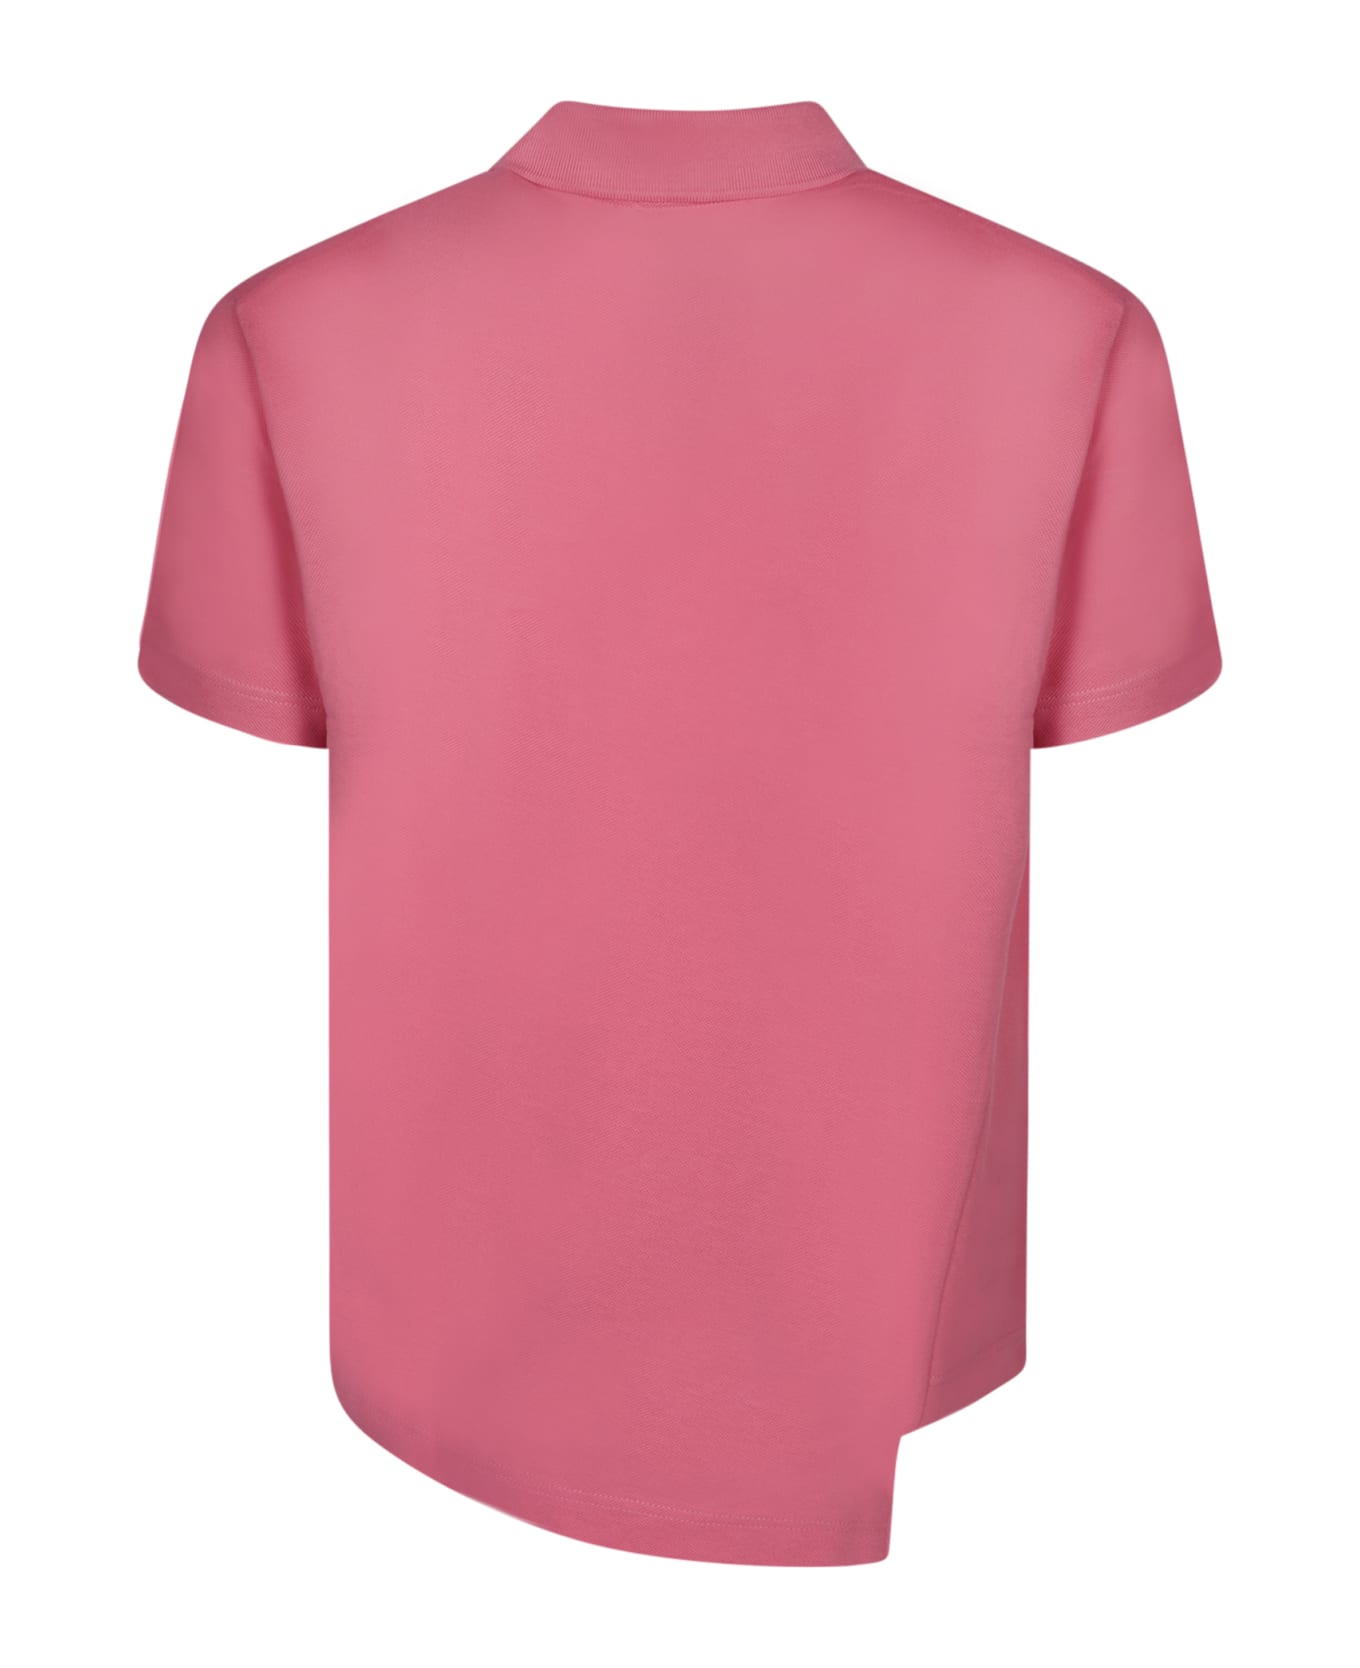 Comme des Garçons Shirt Boss Asymmetric Pink Polo Shirt - Pink ポロシャツ